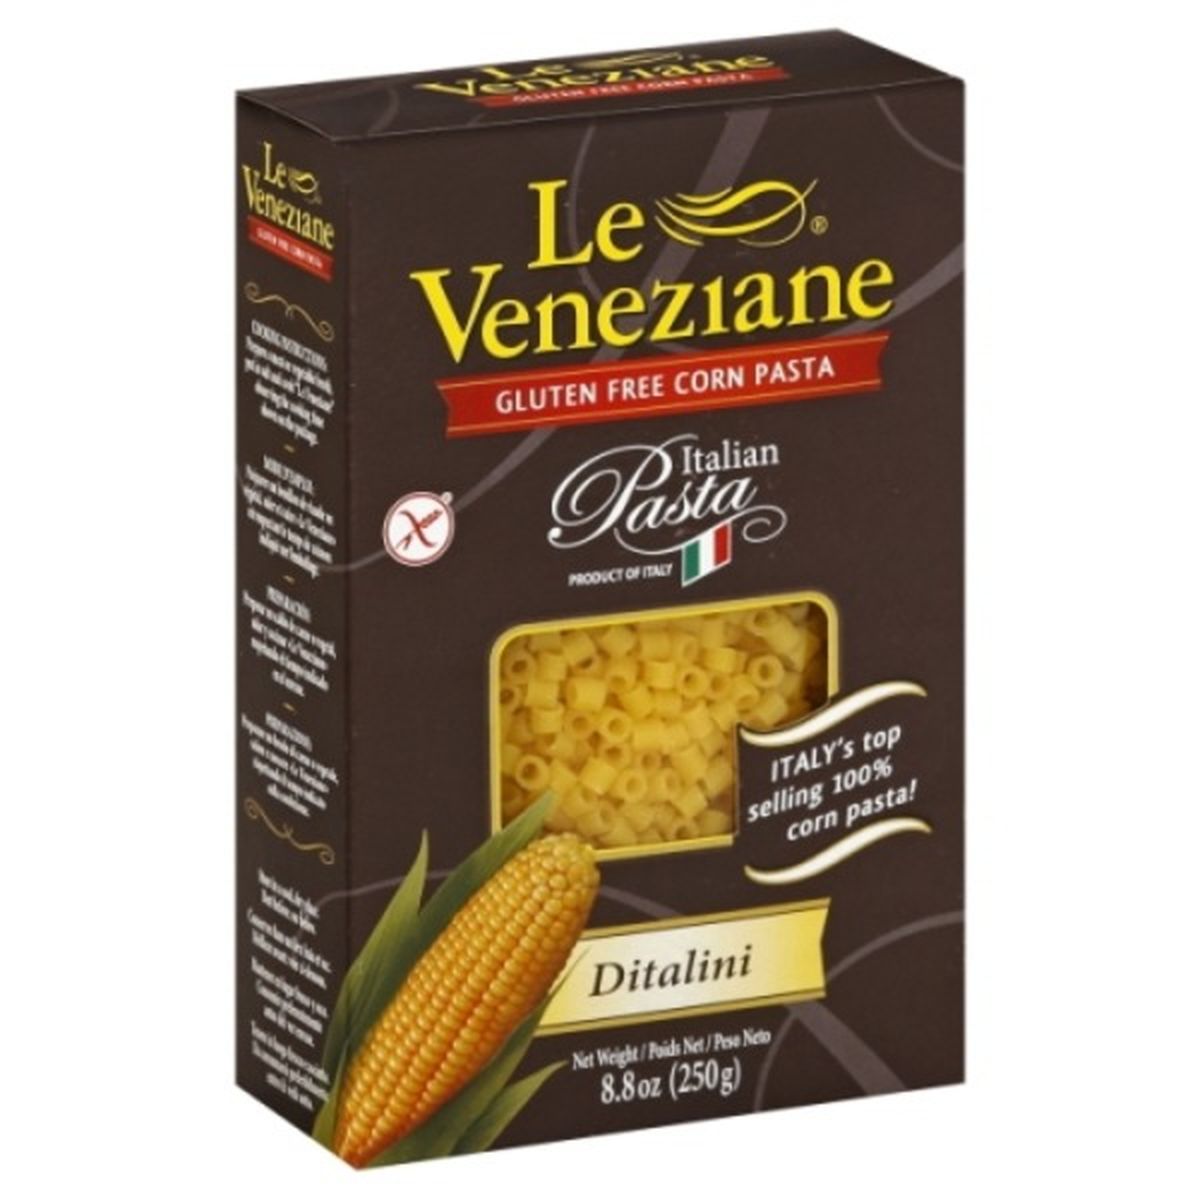 Calories in Le Veneziane Ditalini, Gluten Free, Corn